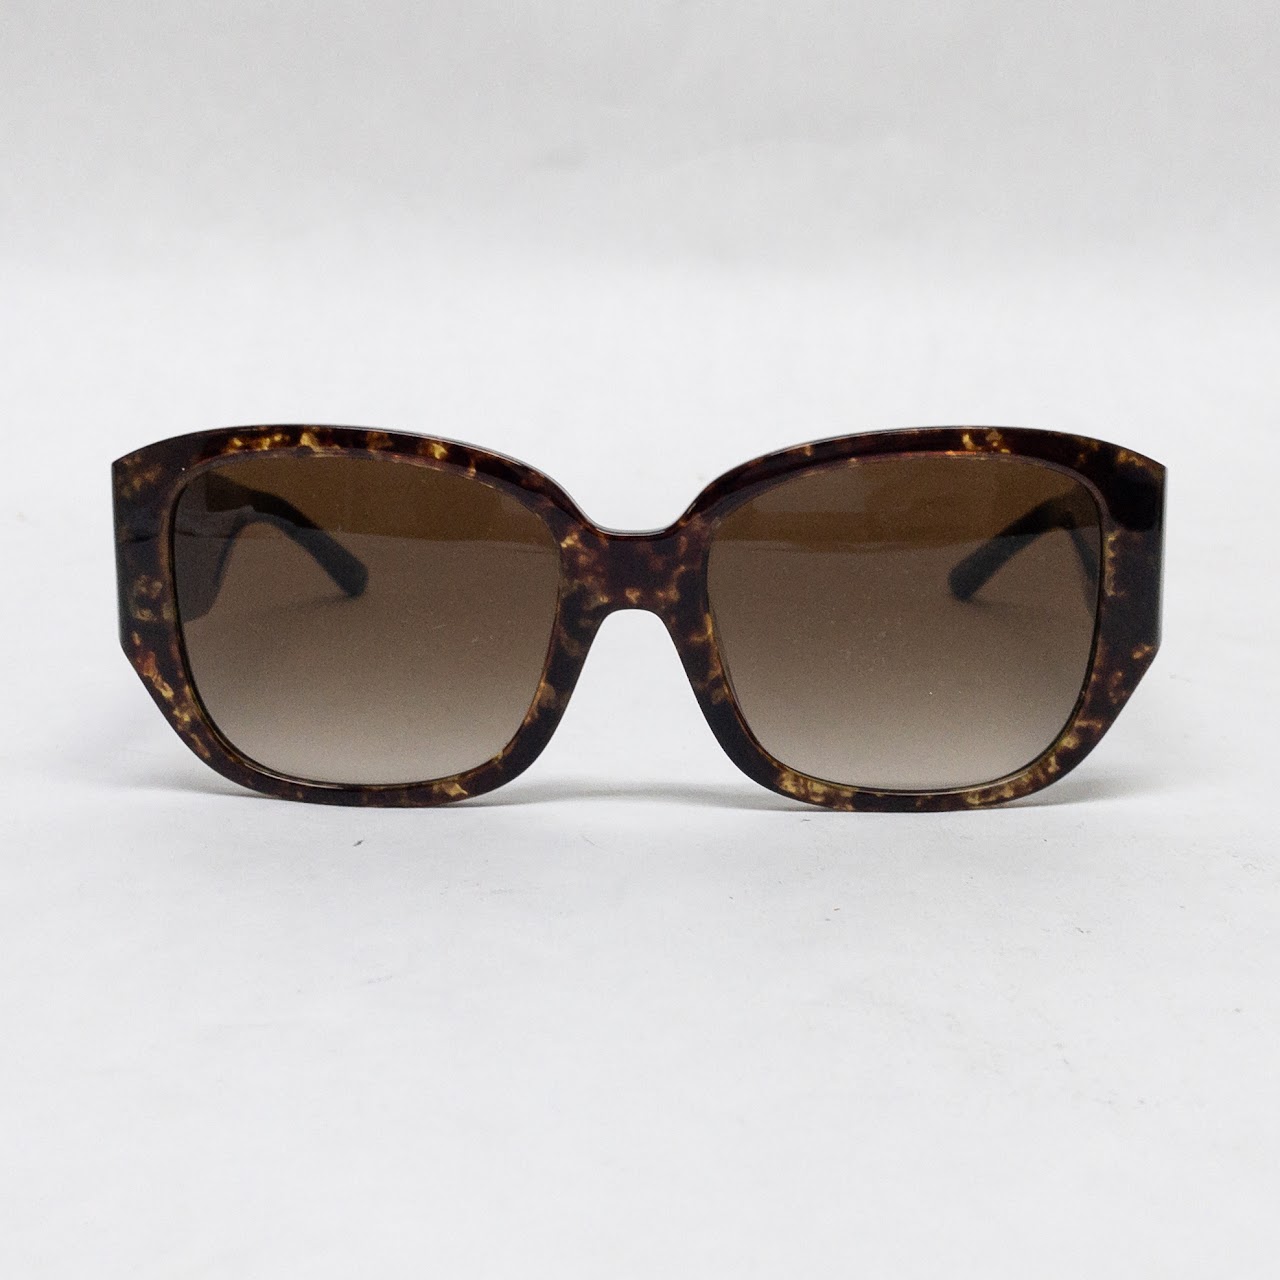 Tory Burch Tortoiseshell Sunglasses